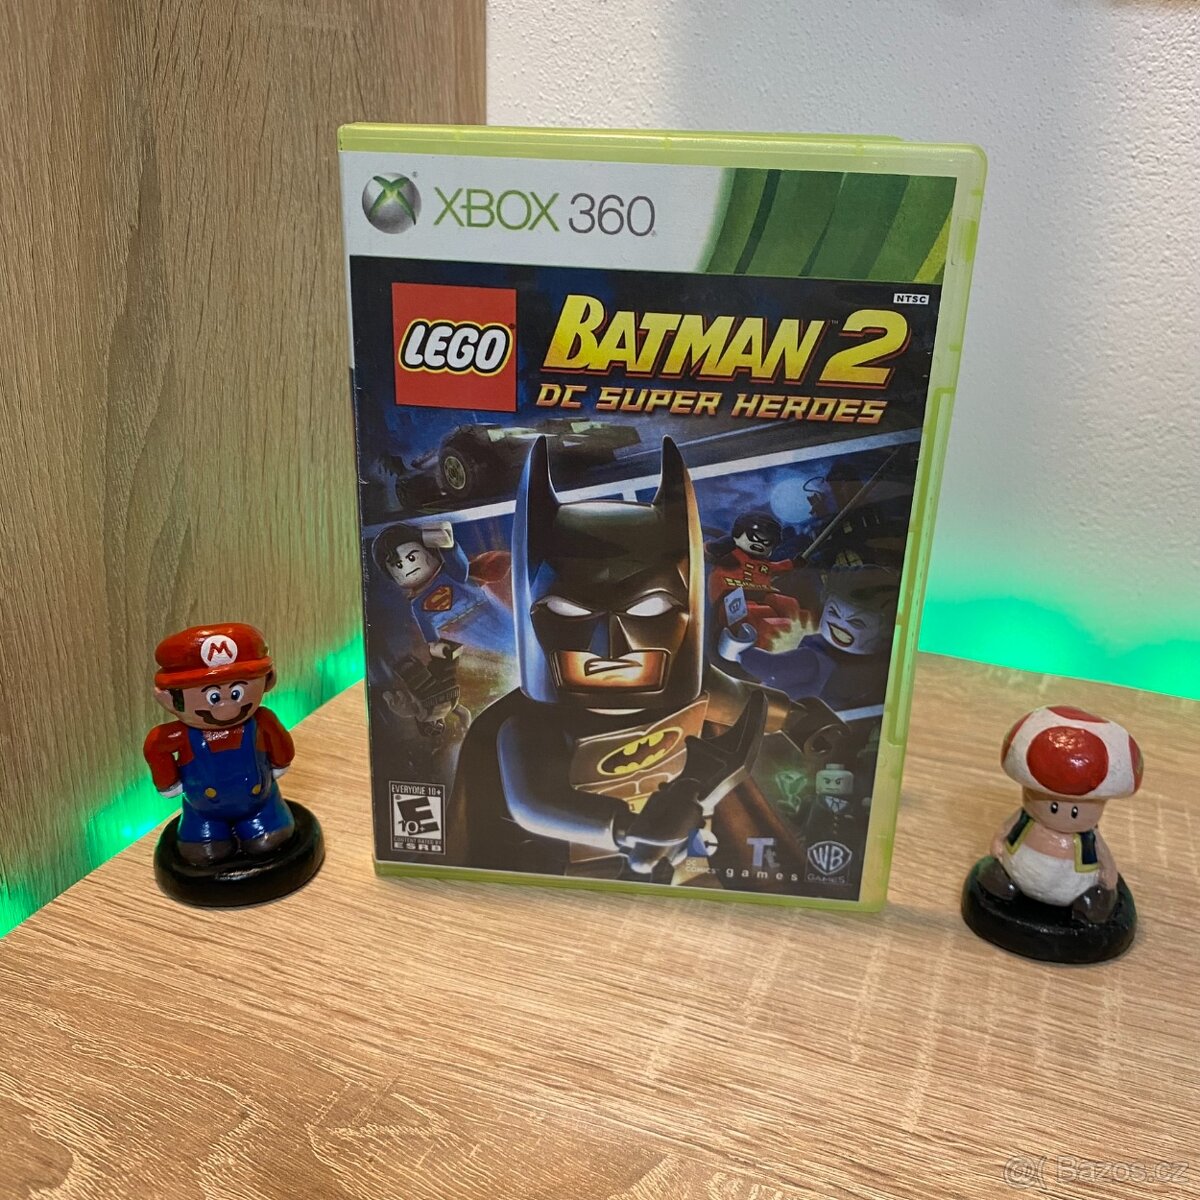 Lego Batman 2 : DC super heroes - XBOX 360